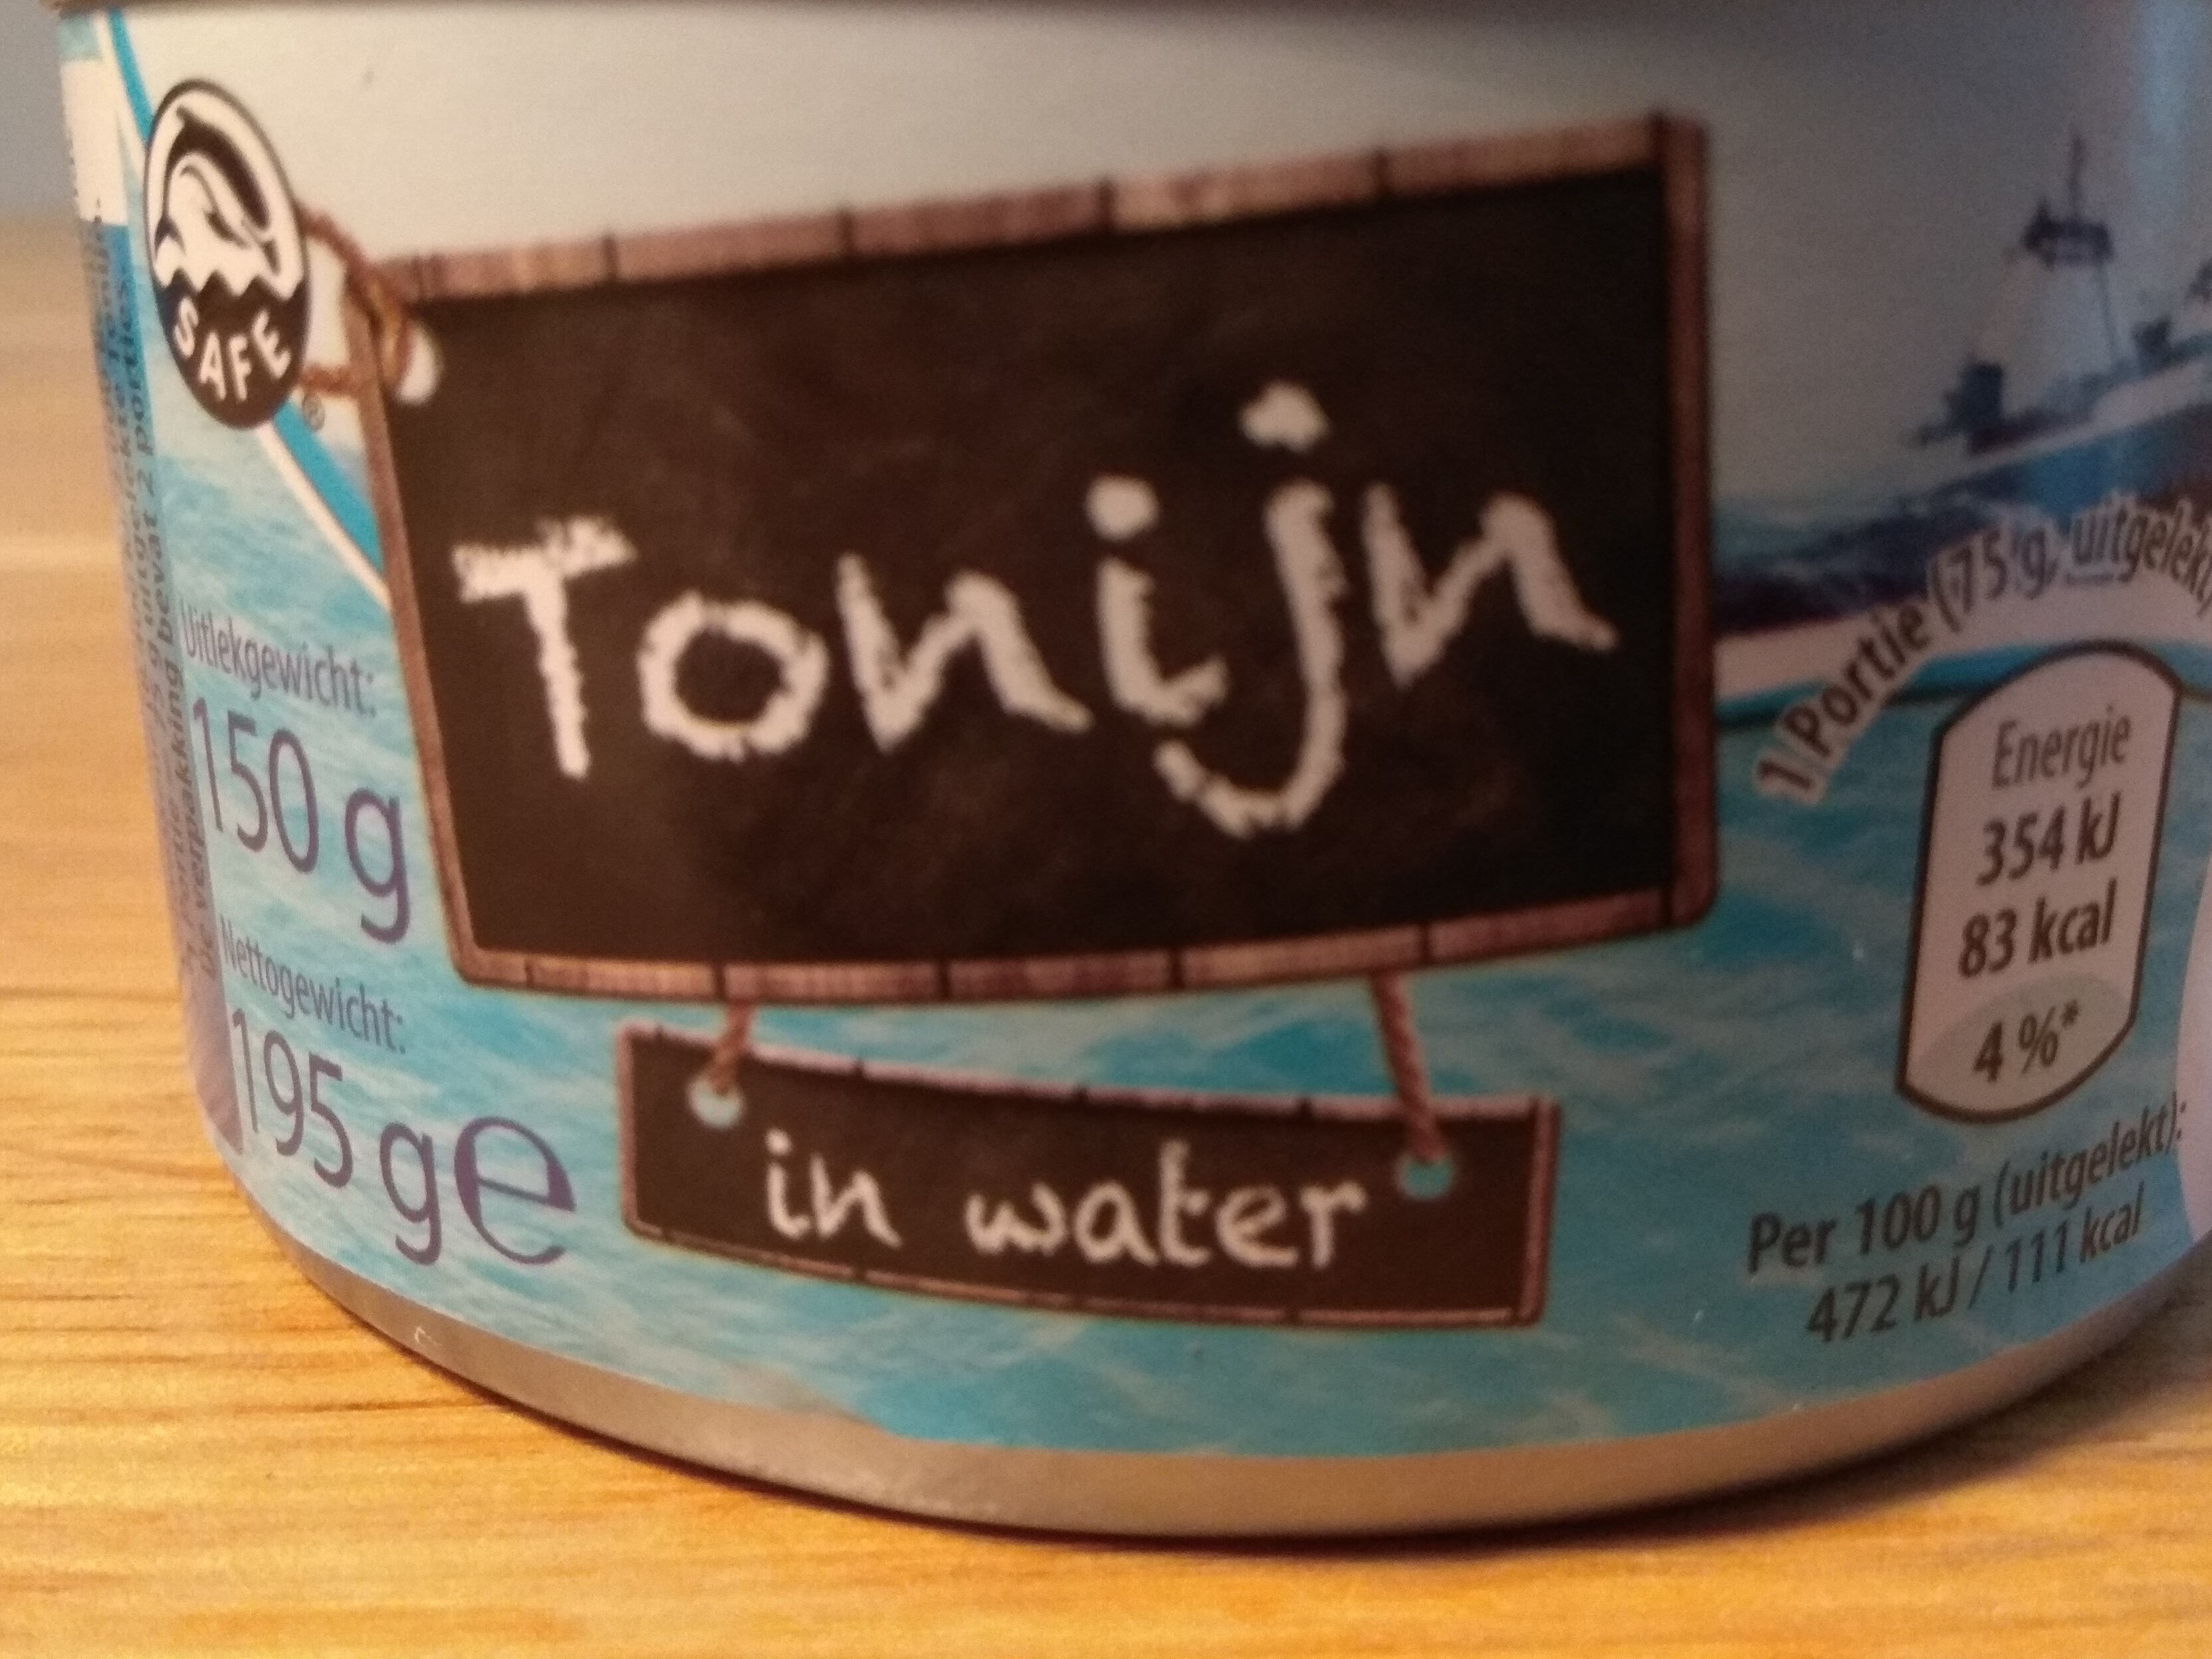 Tonijn in water - Product